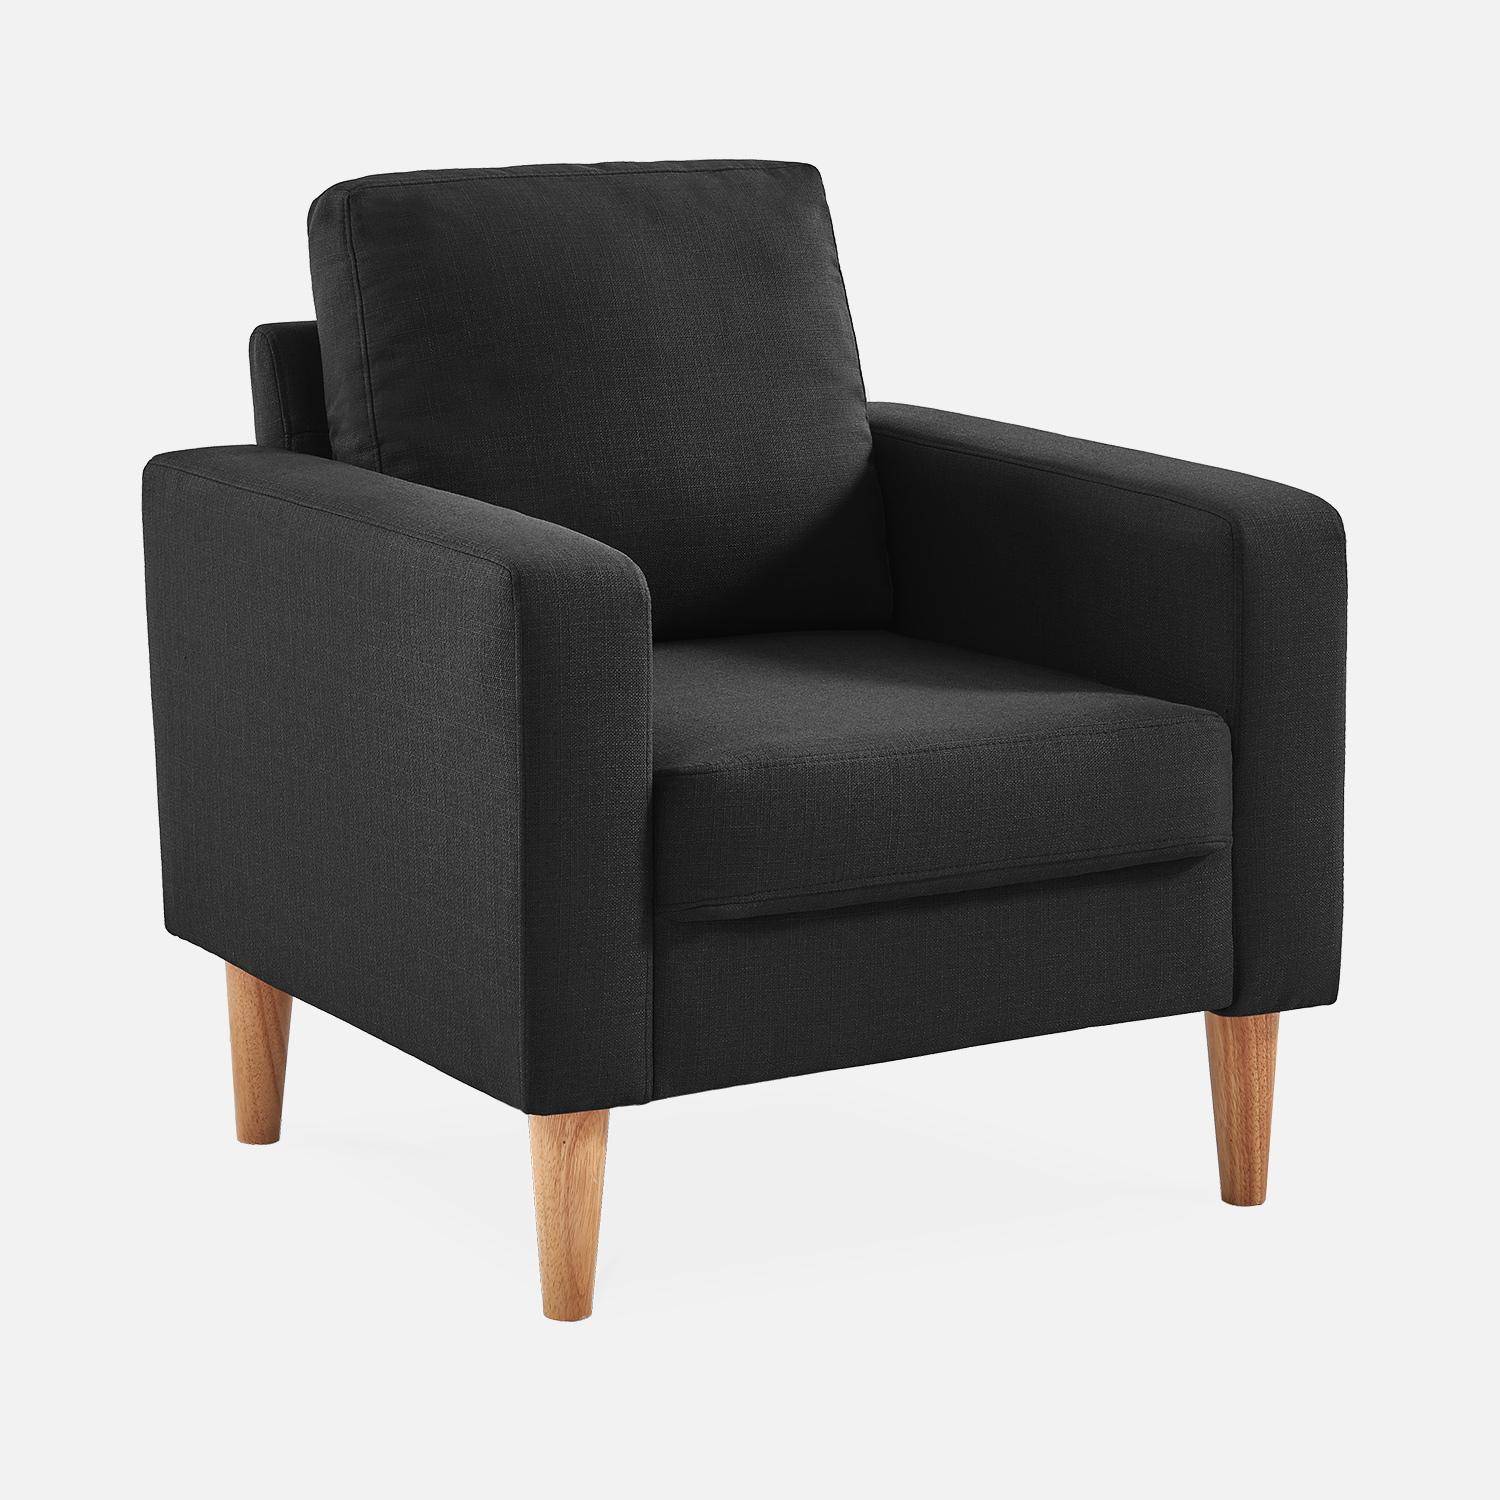 Donkergrijze stoffen zetel - Bjorn - 1-zits sofa met houten poten, Scandinavische stijl,sweeek,Photo2